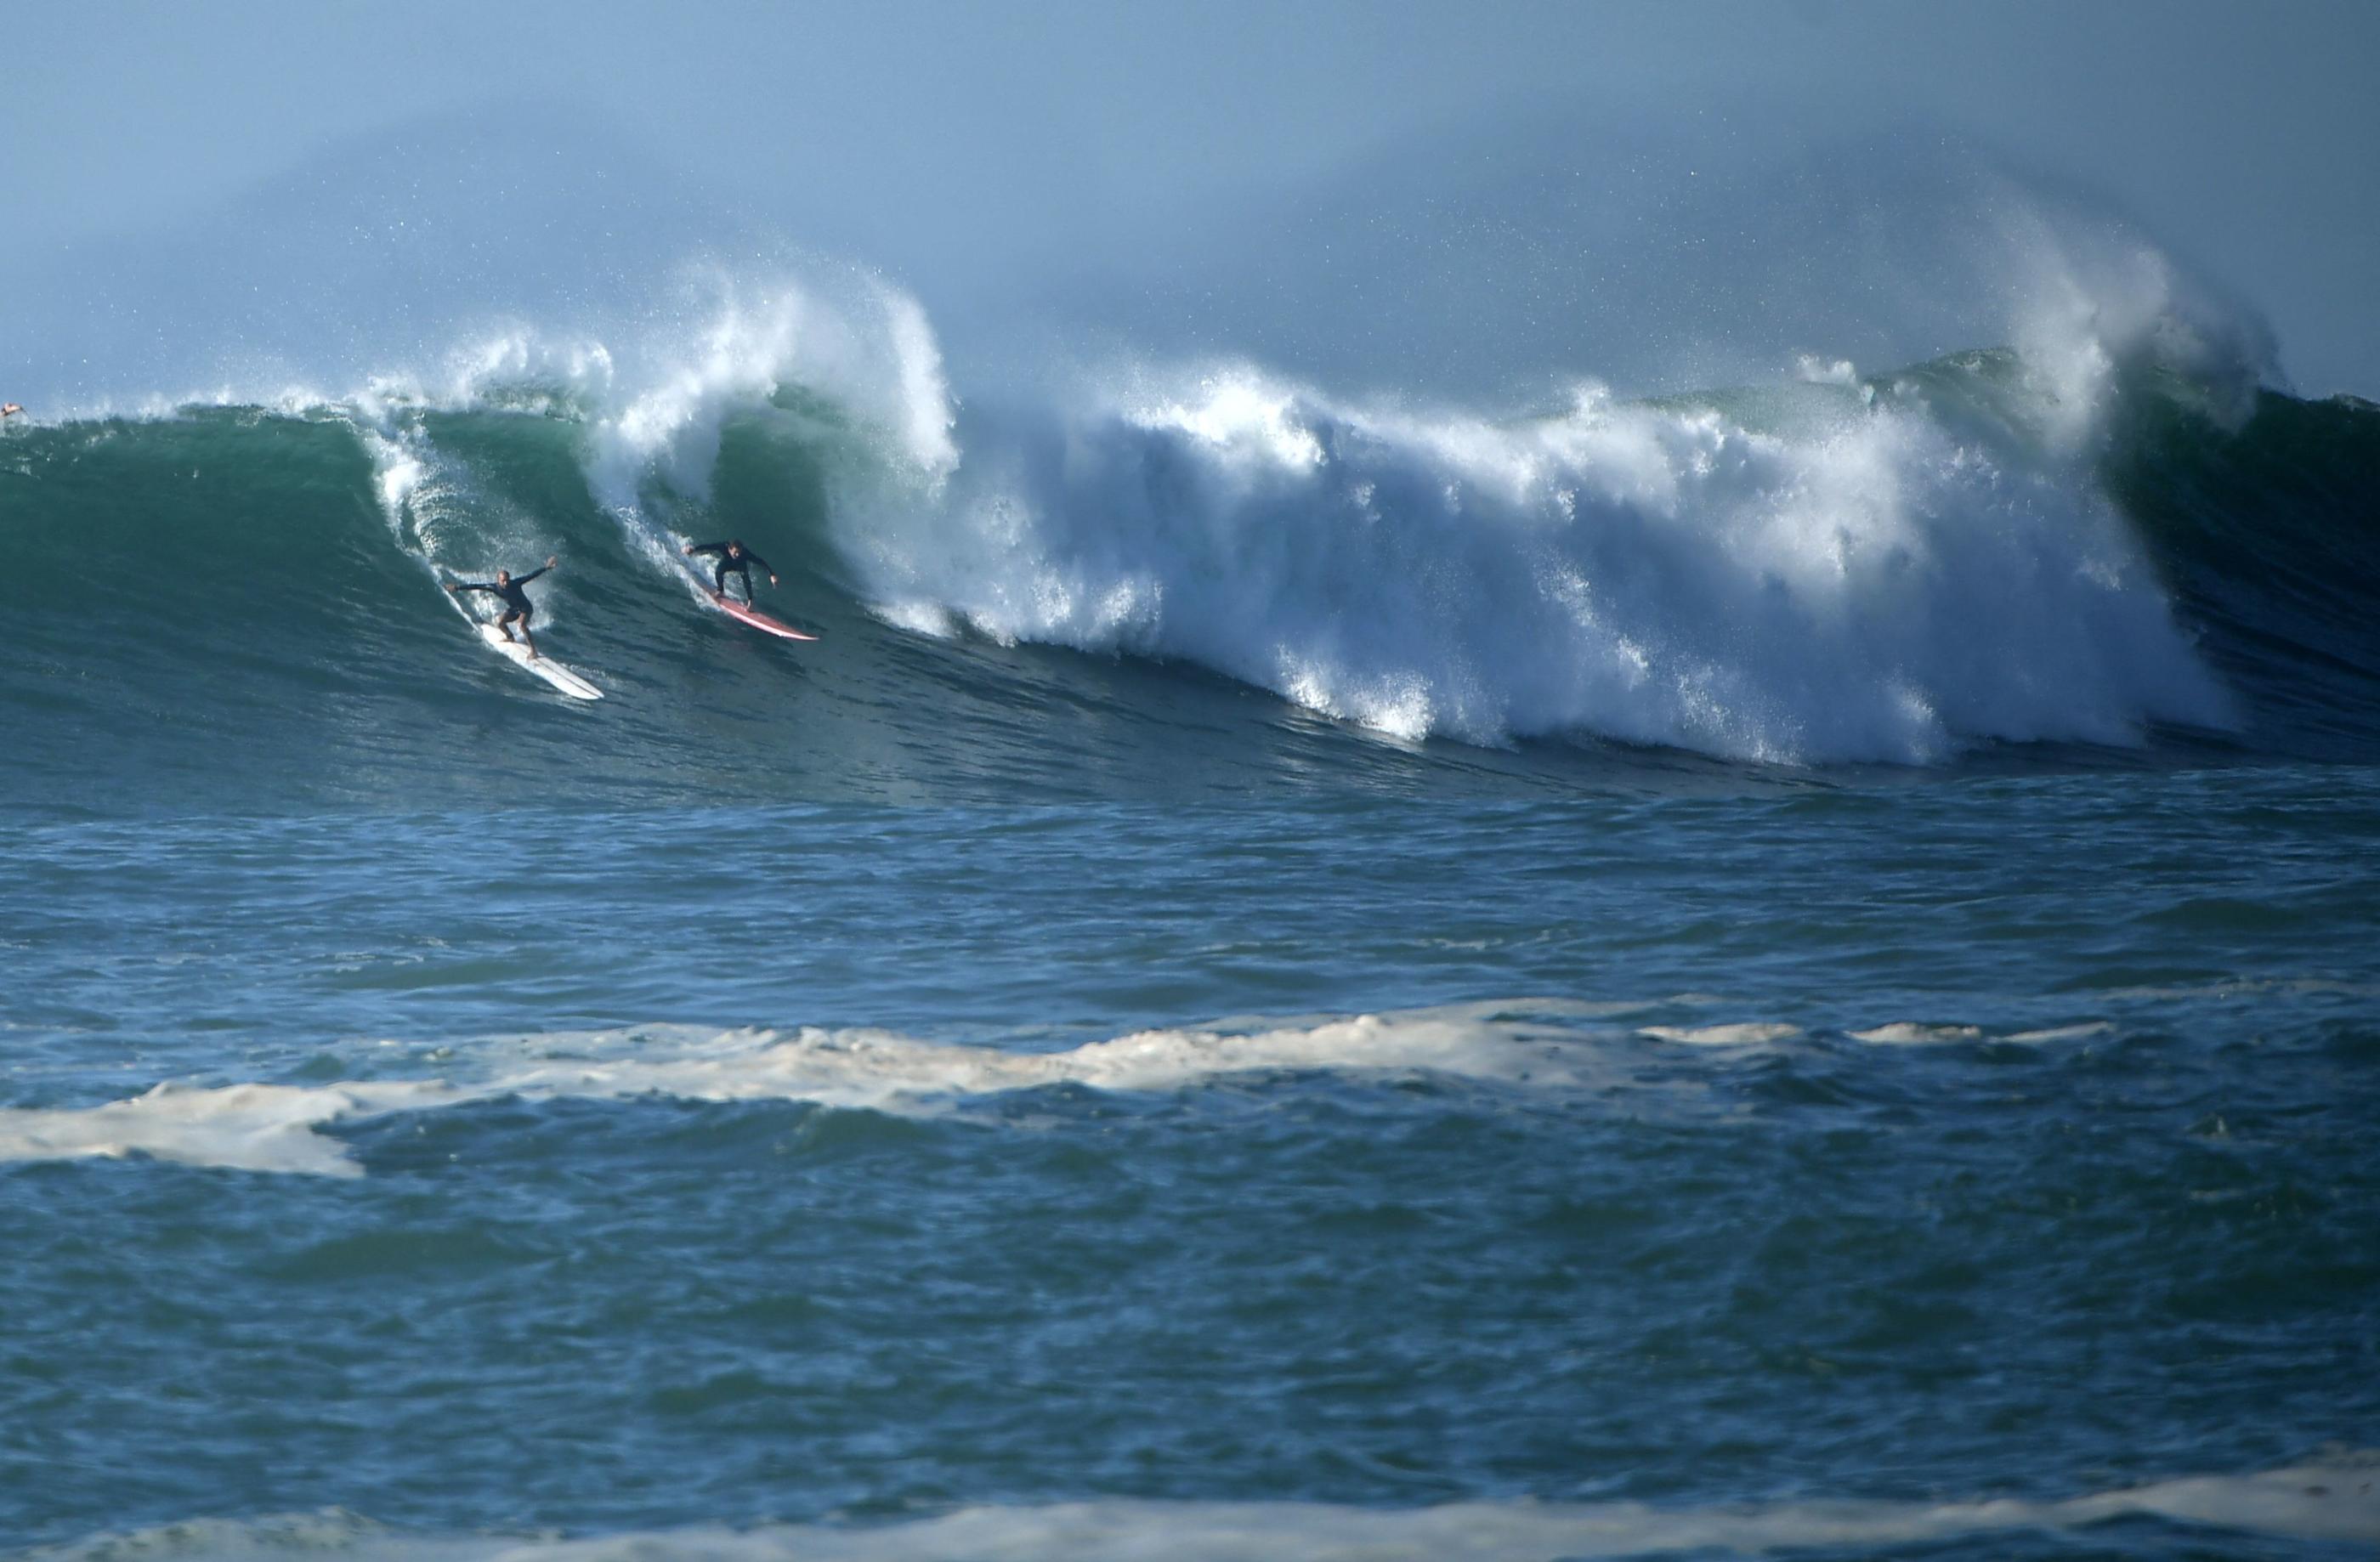 Des surfeurs ont été pris au piège par de fortes vagues à Biarritz ce samedi (Illustration). AFP / Gaizka Iroz